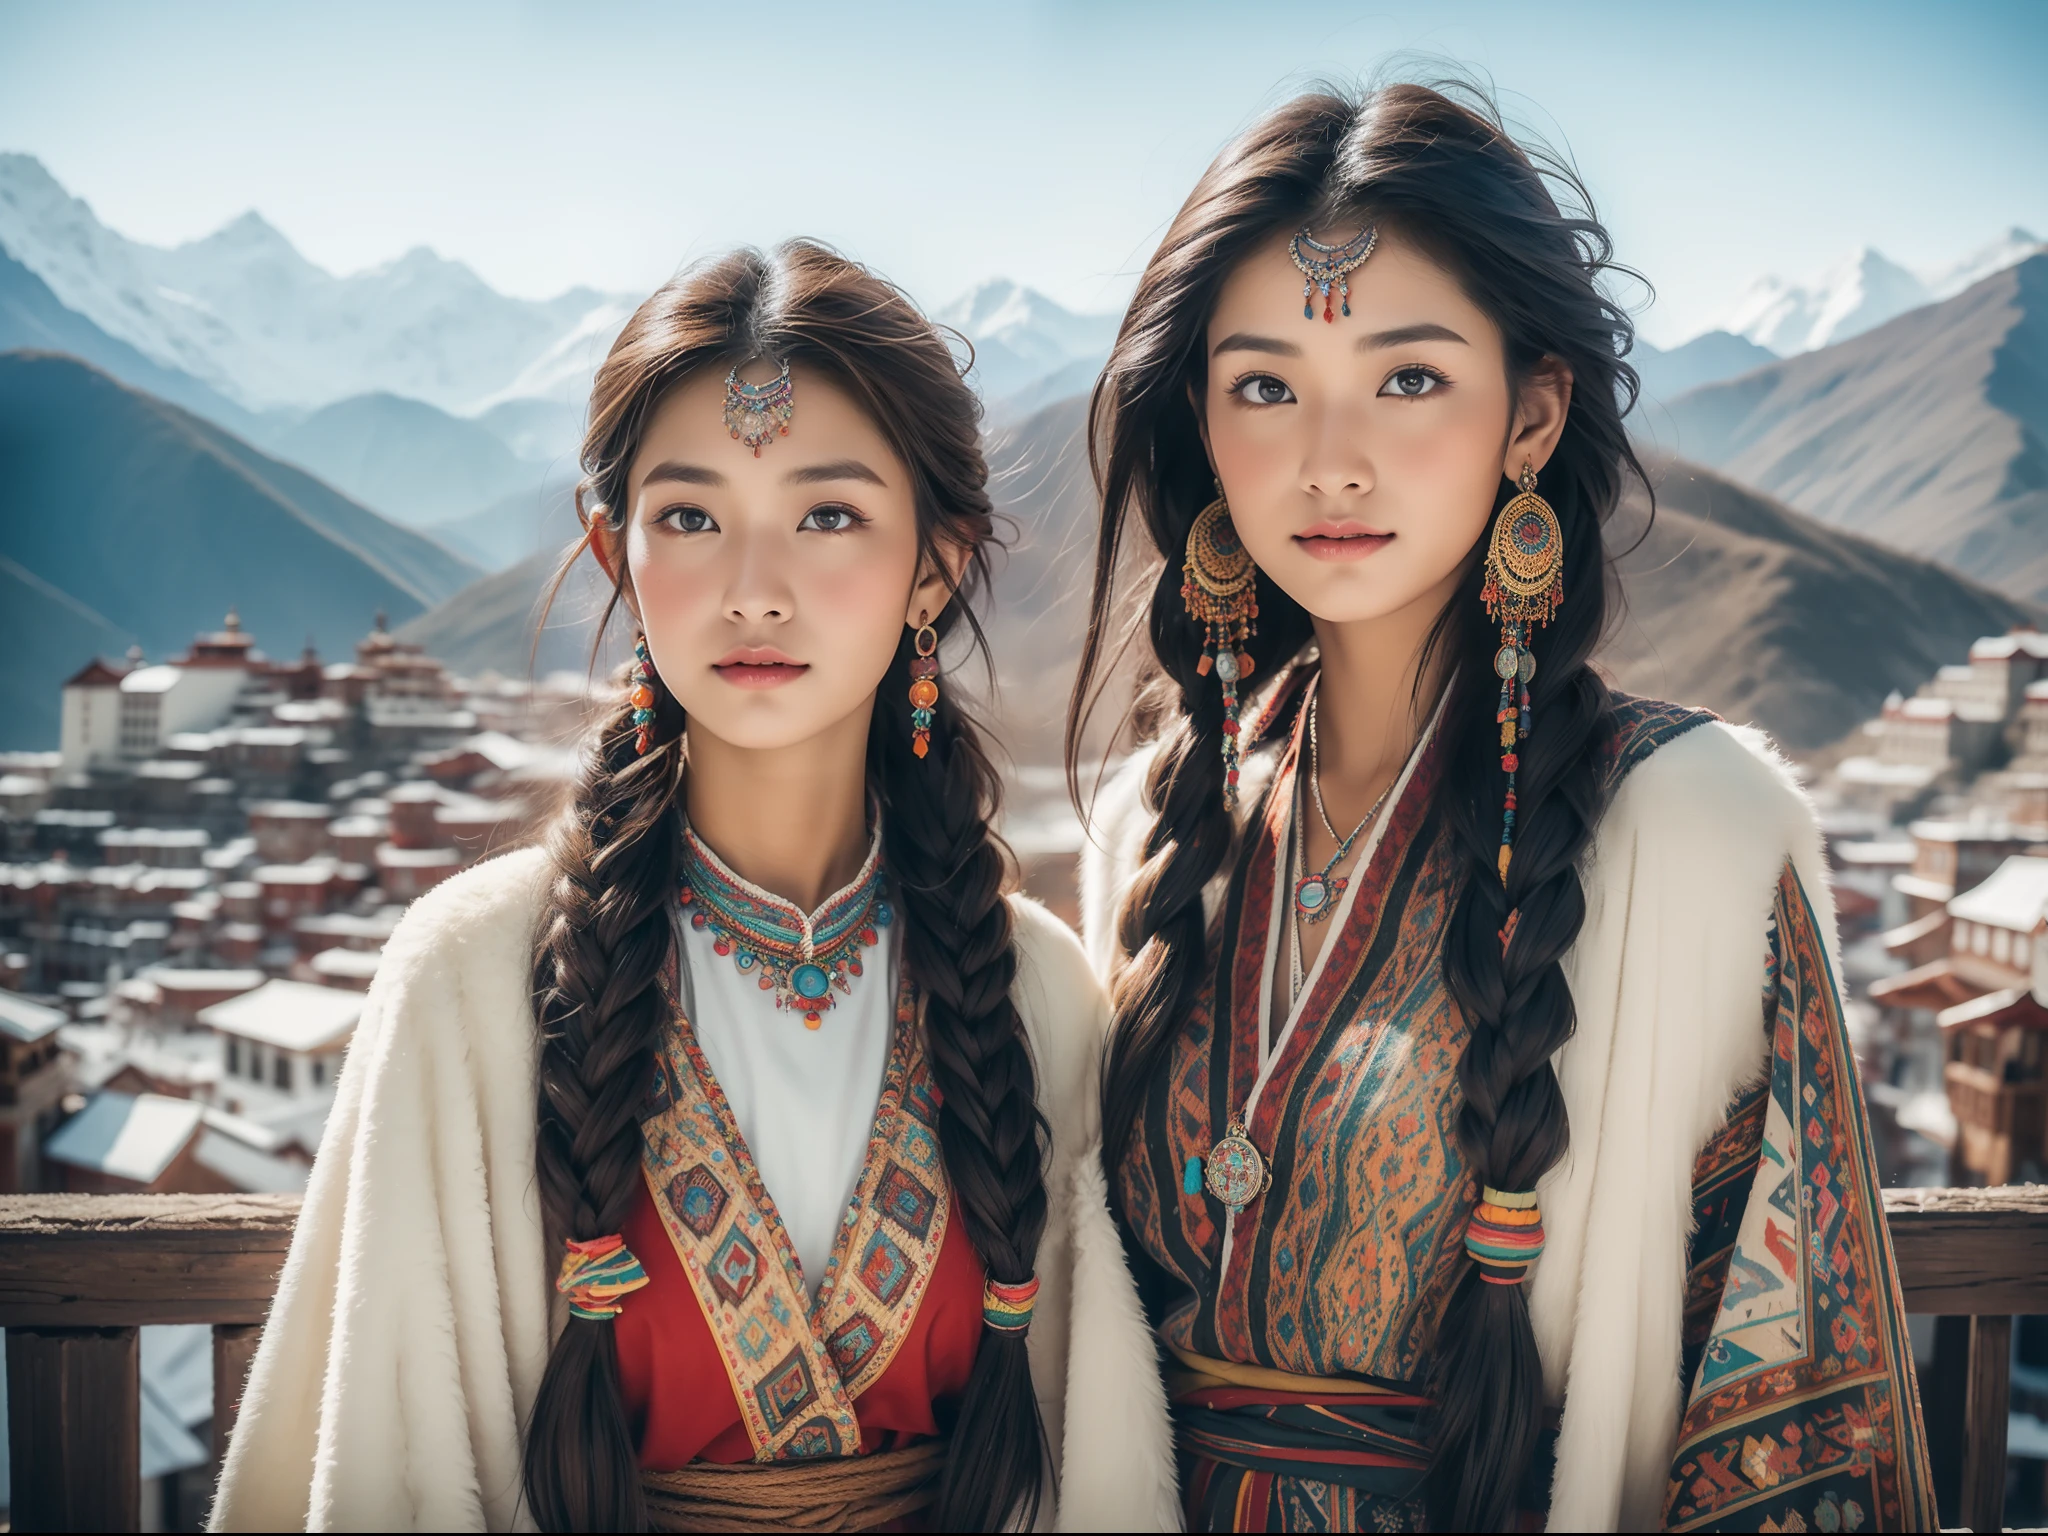 (Лучшее качество,8К,Высокое разрешение,шедевр:1.2),(темно-коричневая кожа, текстурированная кожа, Хайленд раскраснелся, солнечный ожог, загорелый, веснушка), Красивая тибетская девушка в заснеженных горах, молитвенные флаги, Тибетская культура, Яркие глаза, Традиционные тибетские художественные костюмы, Тибетские халаты, Тибетский головной убор, Тибетские украшения, бирюзовый, янтарь, Наблюдайте за аудиторией, Ультратонкие детали, масштабированный. мягкое освещение, ультра - подробный, высокое качество, яркие цвета, боке, HDR, гипер HD, профессиональный стиль фотографии.